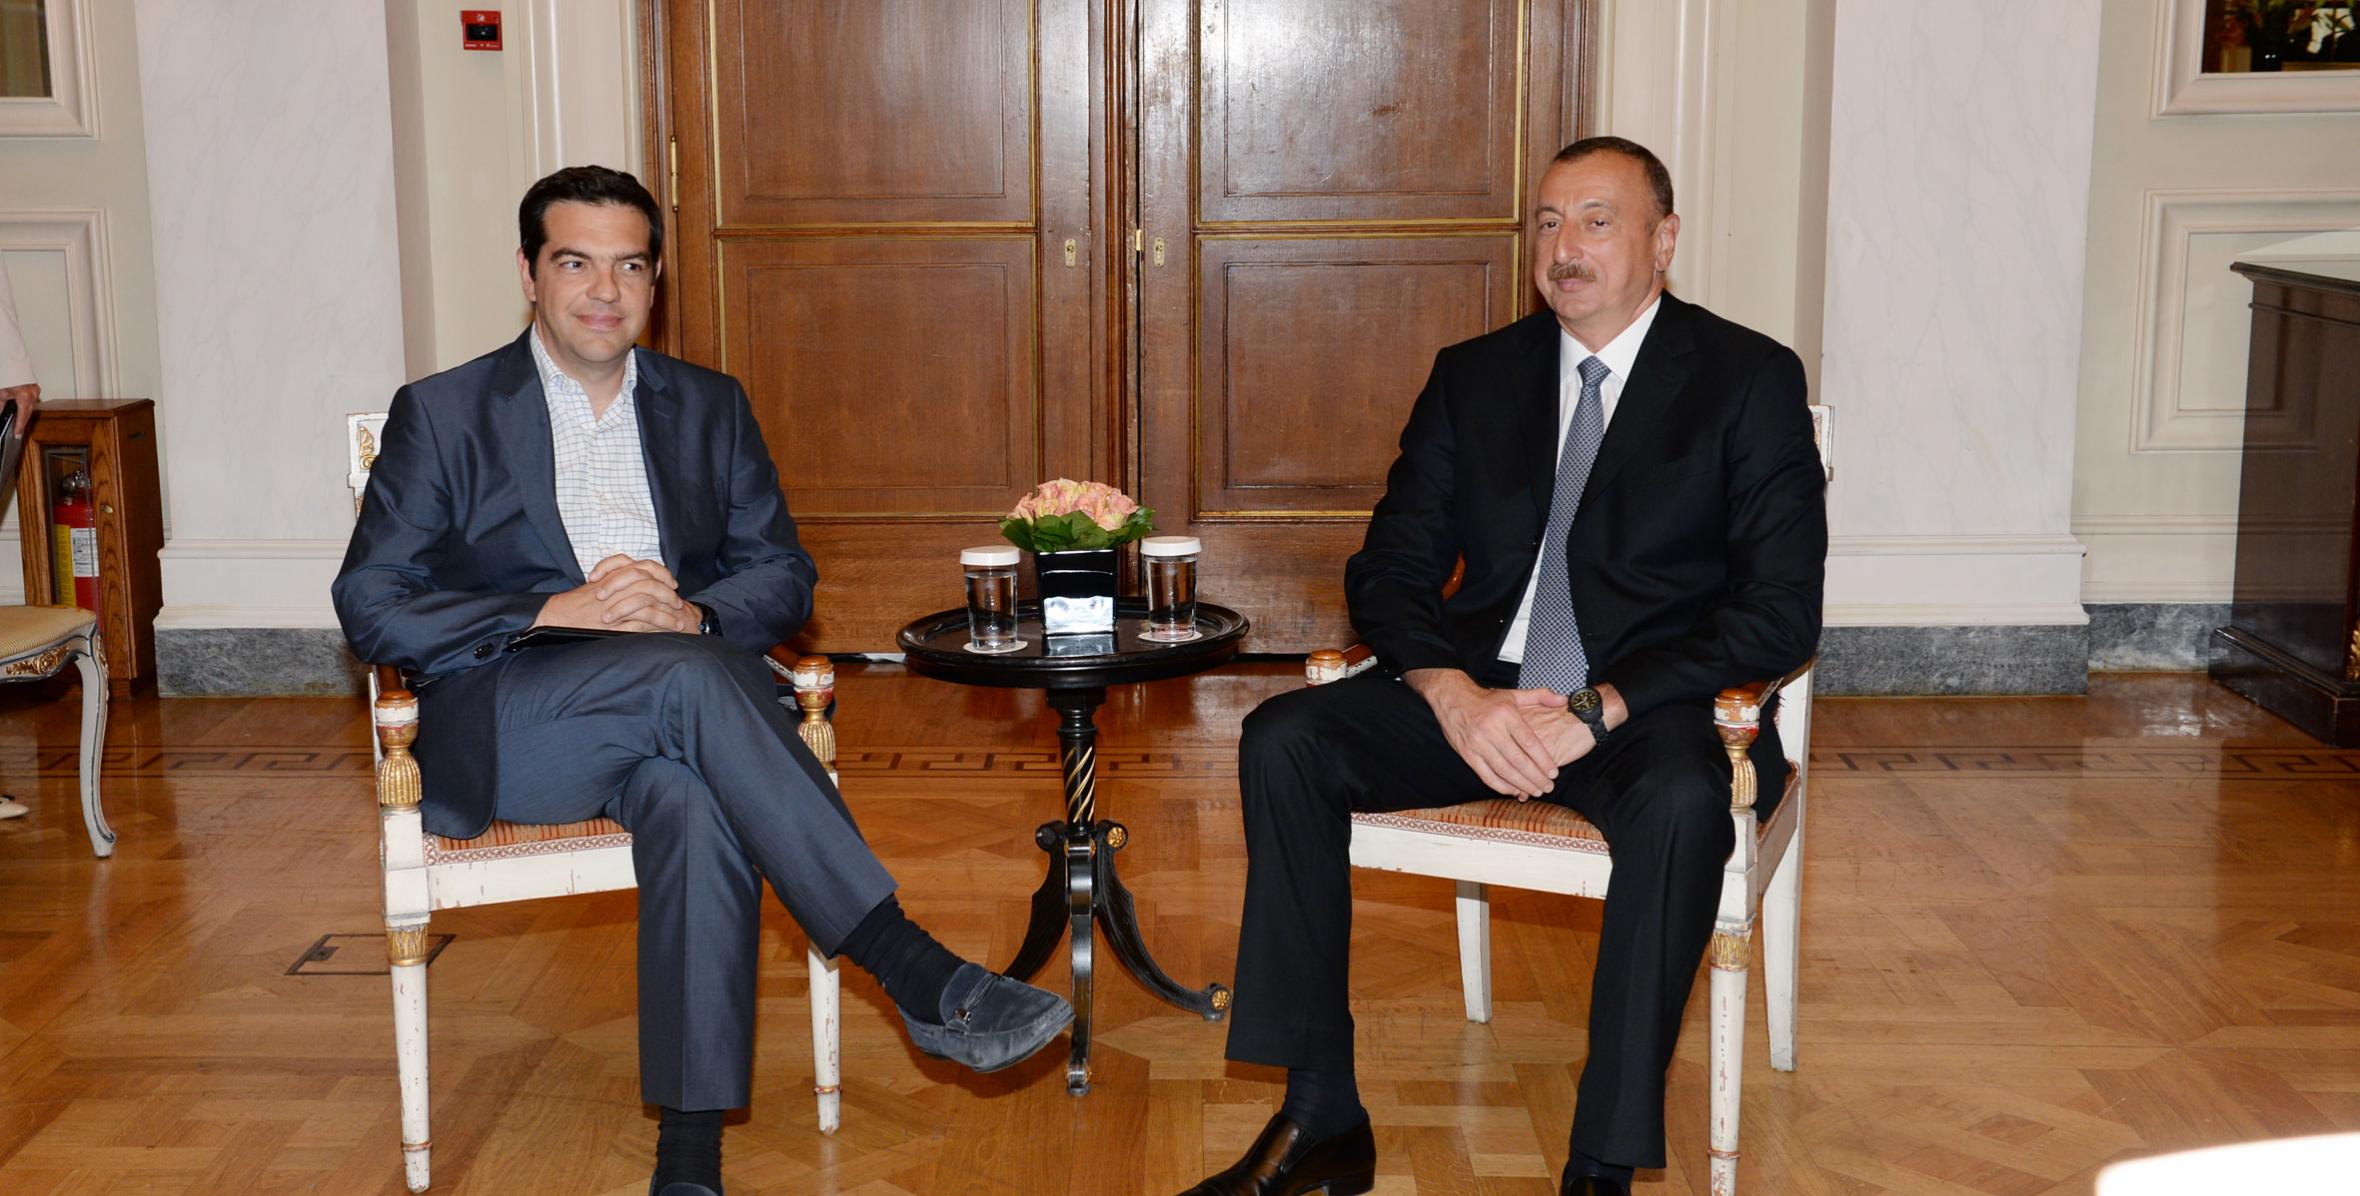 İlham Əliyev Yunanıstan parlamentində əsas müxalifət olan Demokratik Solçular Birliyinin lideri Aleksis Tsipras ilə görüşmüşdür